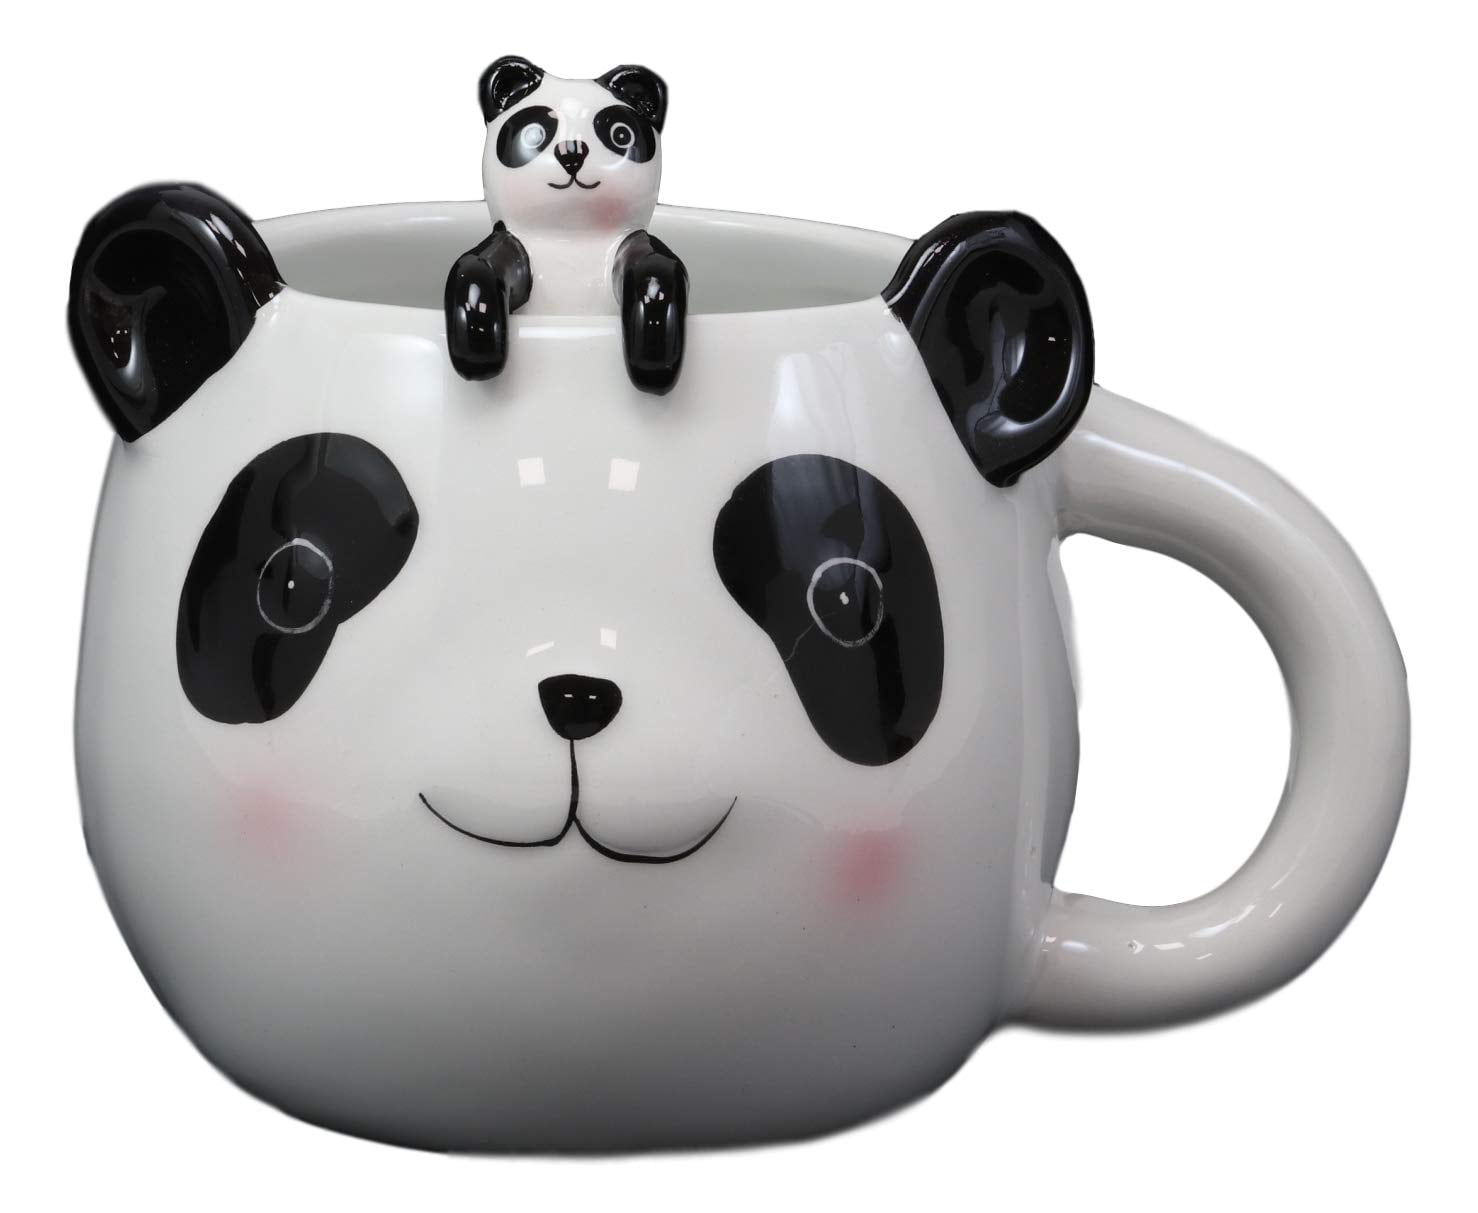 Custom Panda Mug, Panda Gifts, Cute Panda Coffee Mug, Panda - Inspire Uplift